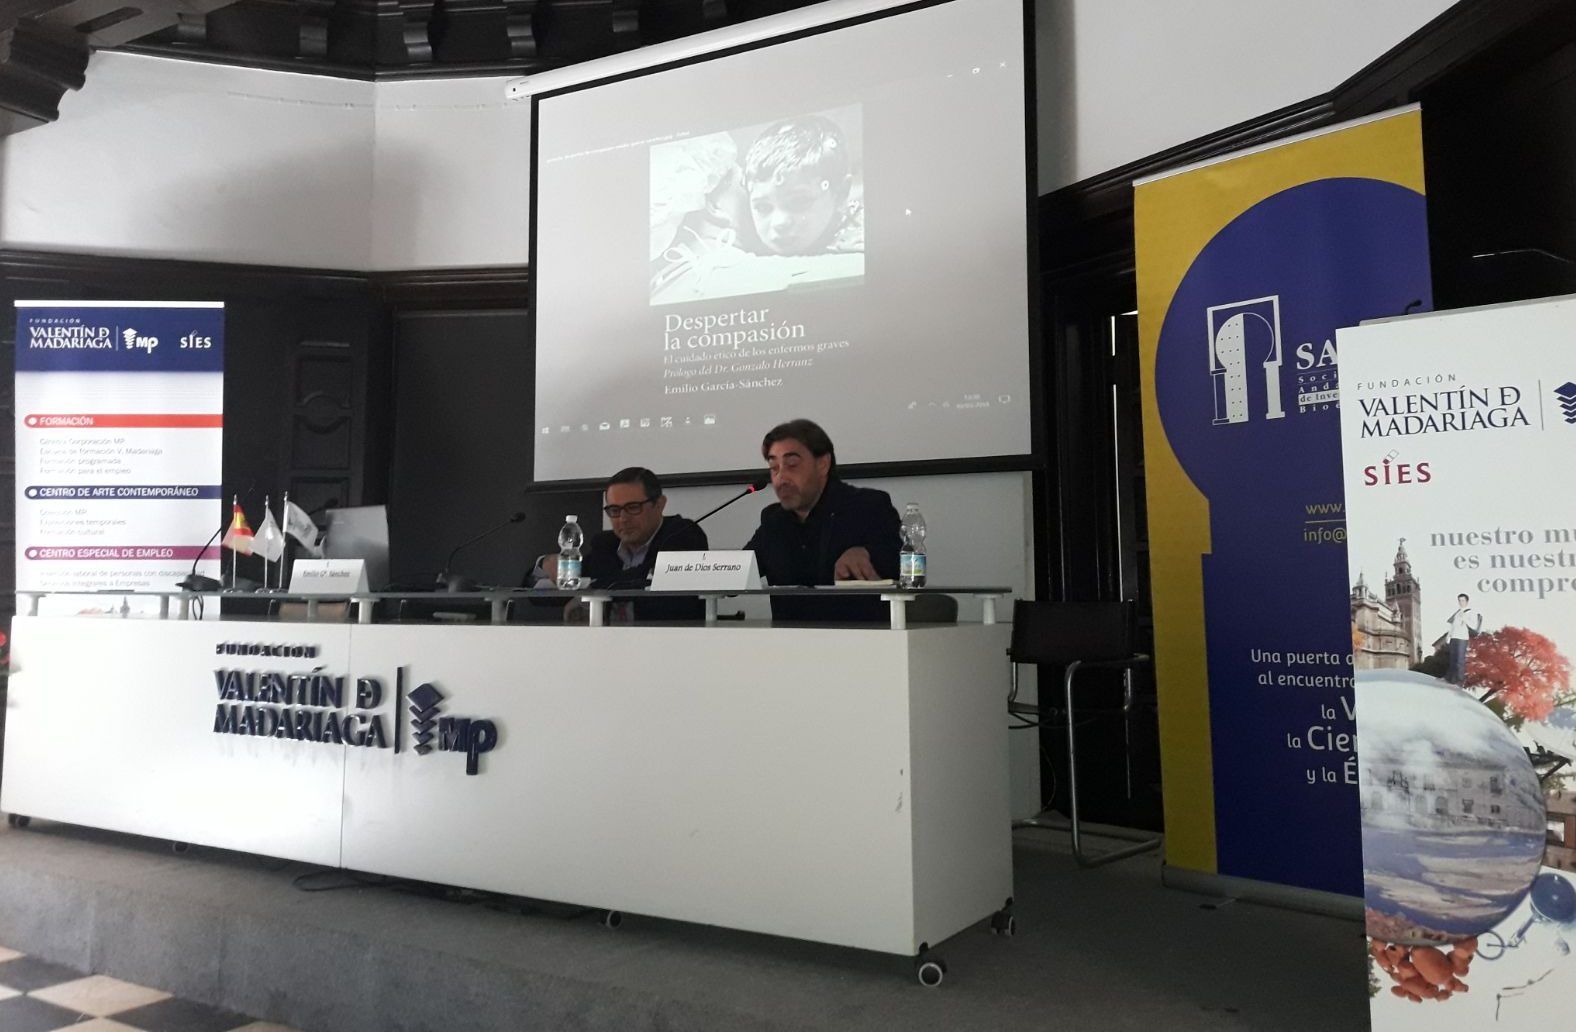 Emilio García Sánchez y Juan de Dios Serrano, durante la presentación del libro Despertar la compasión, en el Congreso Internacional de Bioética de la SAIB.